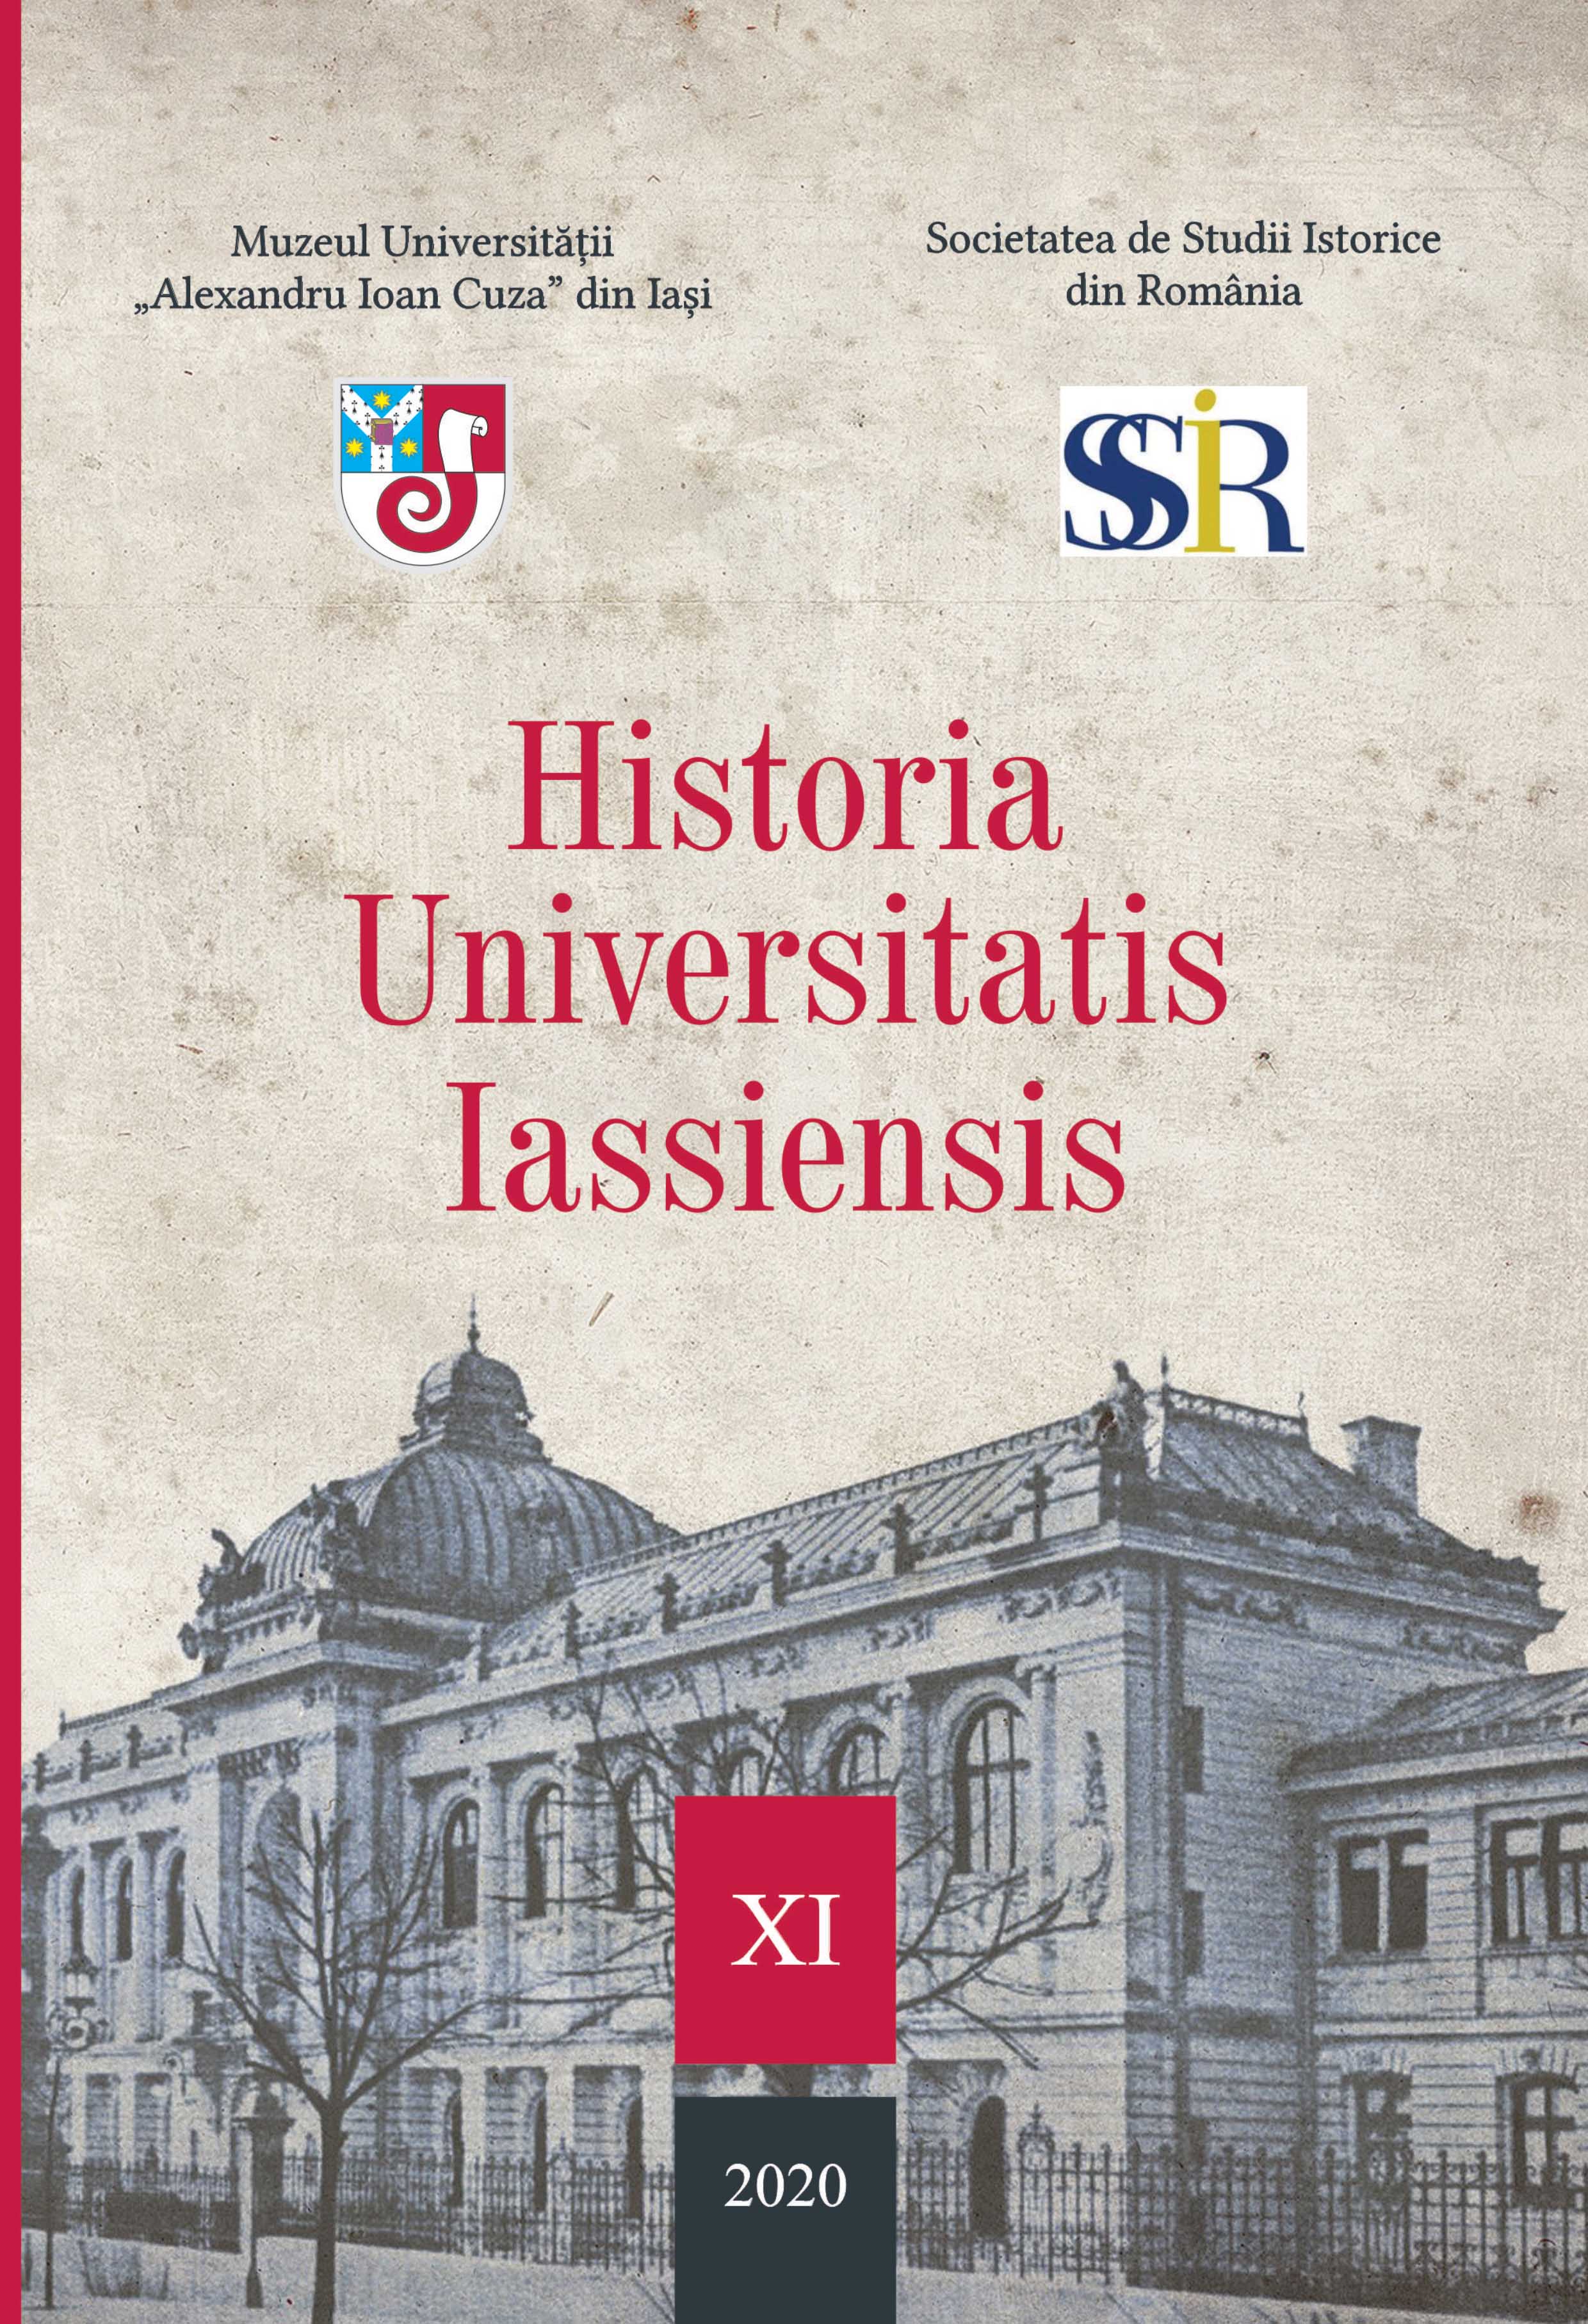 Biblioteca Societății „Muzeul orașului Iași” și preistoria Bibliotecii Județene „Gh. Asachi”